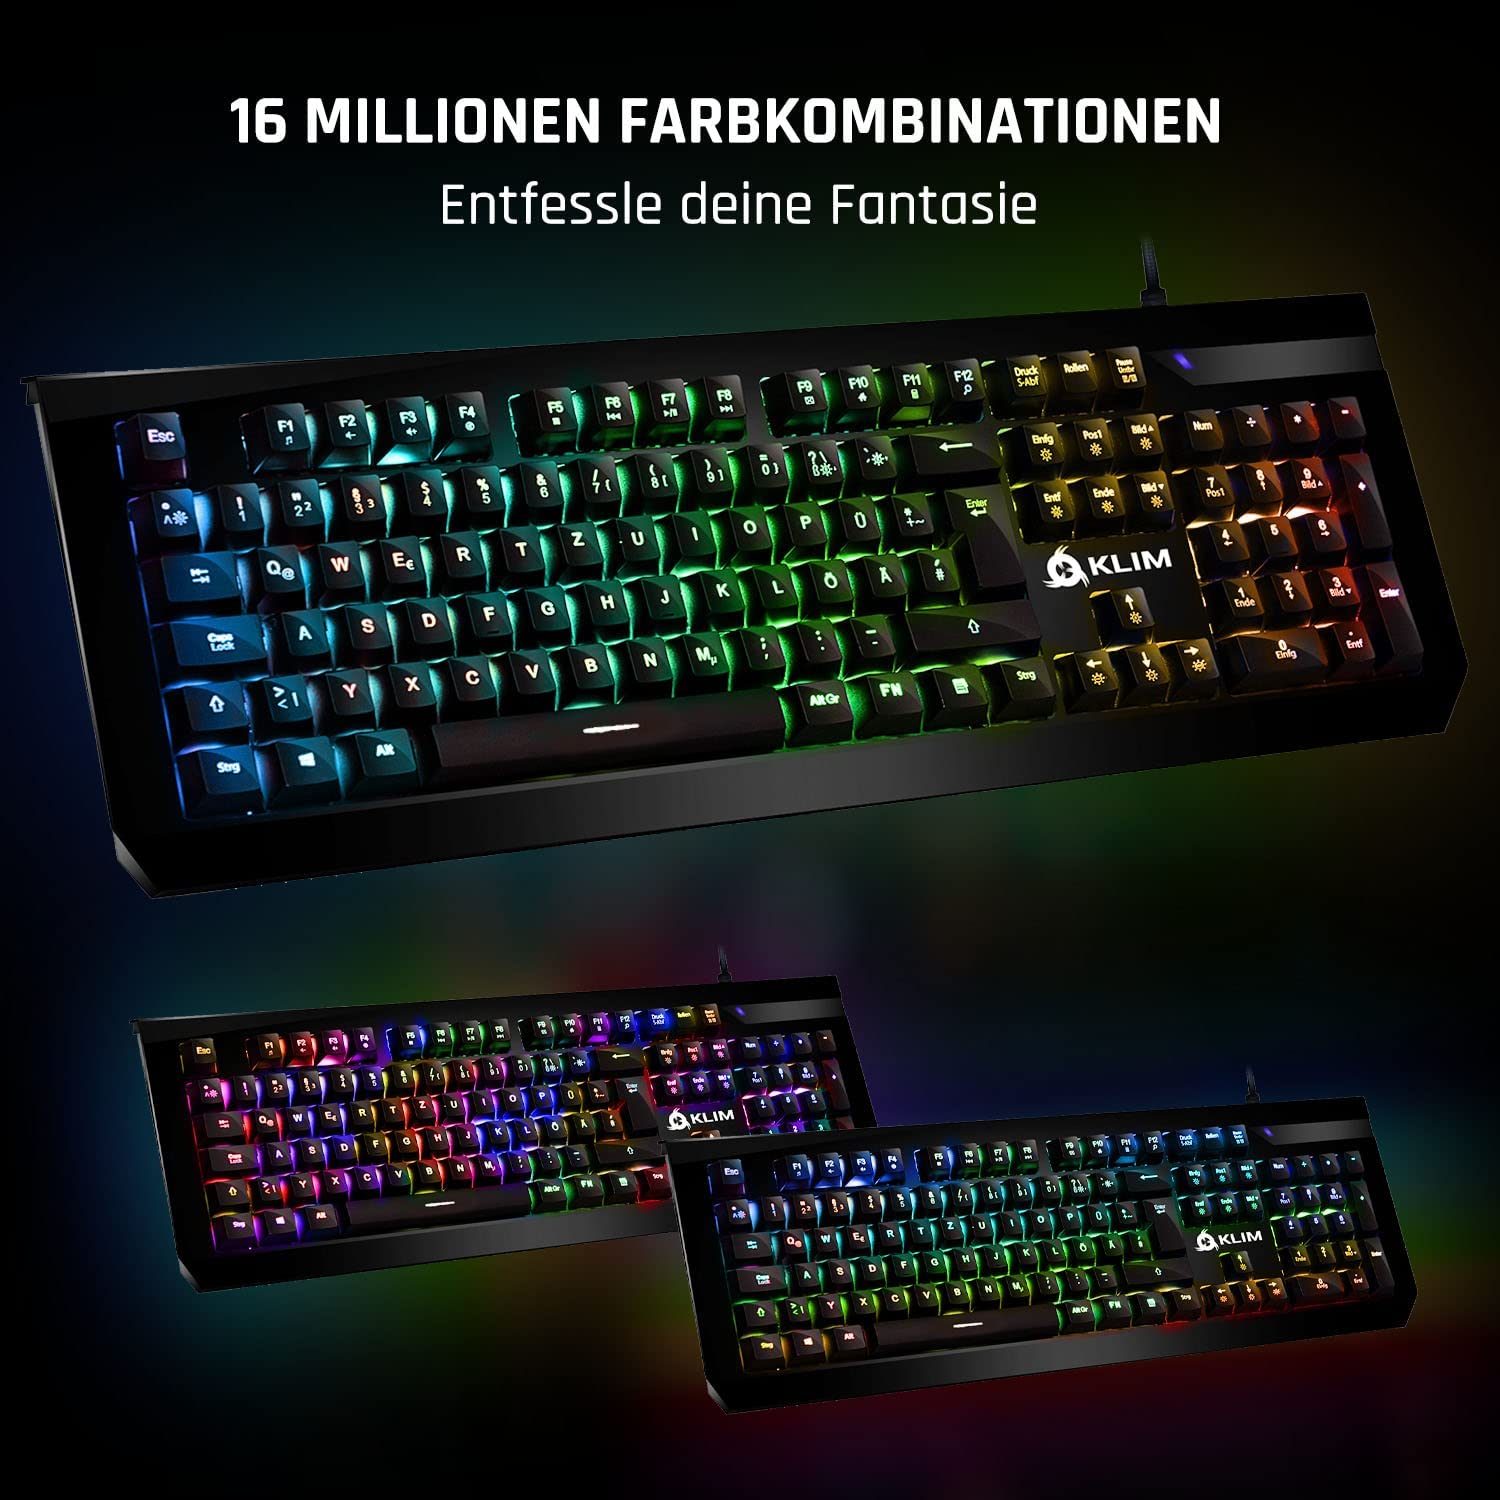 KLIM Domination mechanische Gaming Tastatur